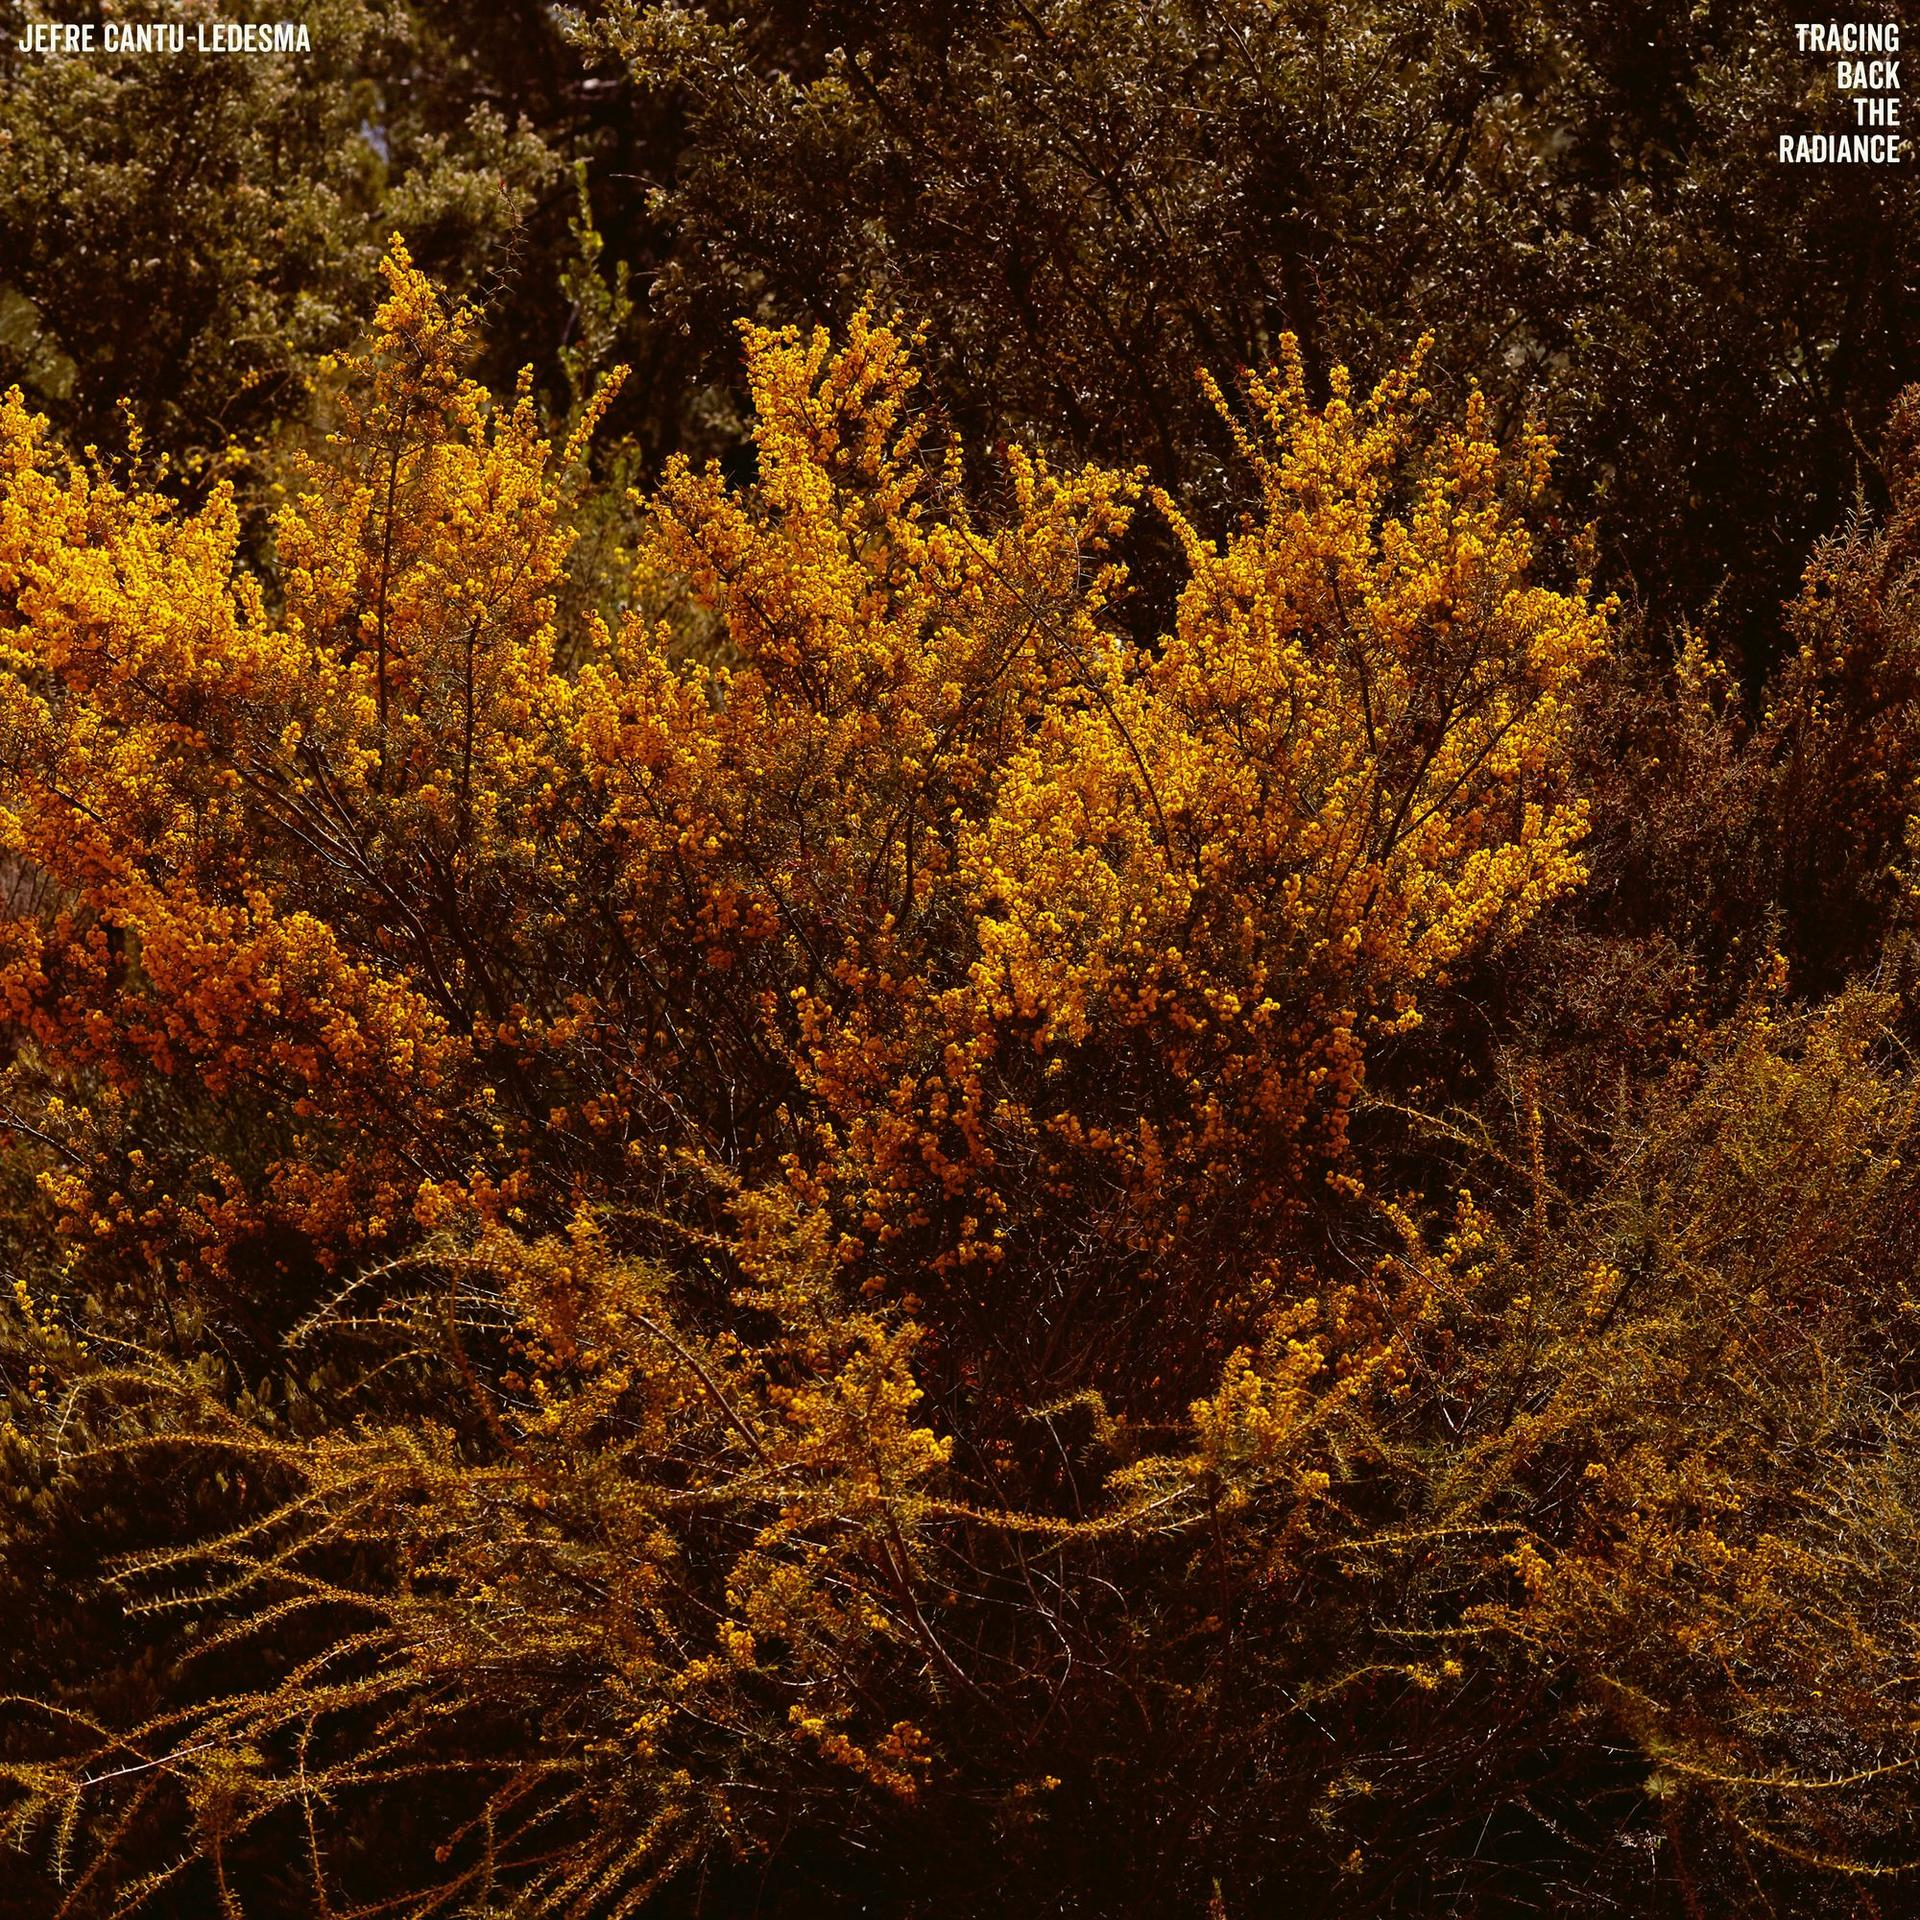 Jefru Cantu-ledesma Radiance - The - (Vinyl) Back Tracing